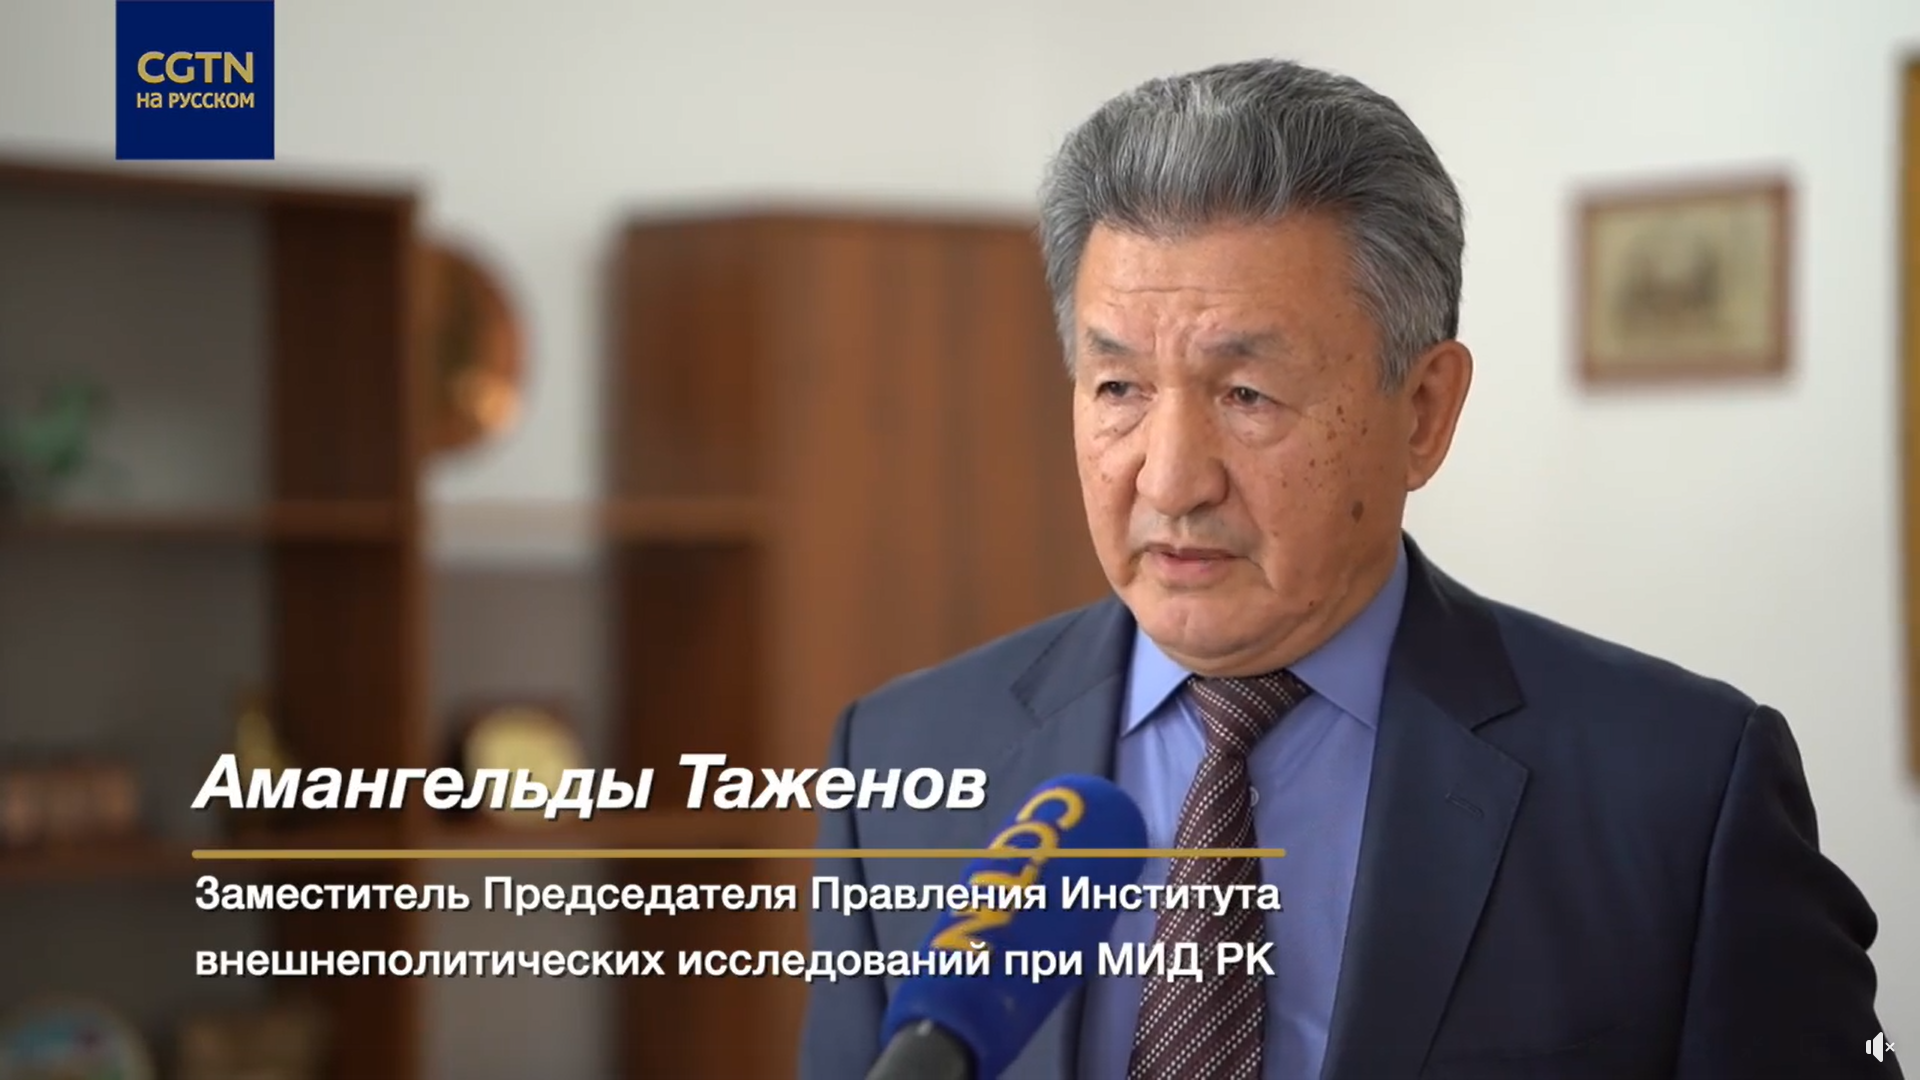 Интервью вечерней новостной программе телеканала «Астана»